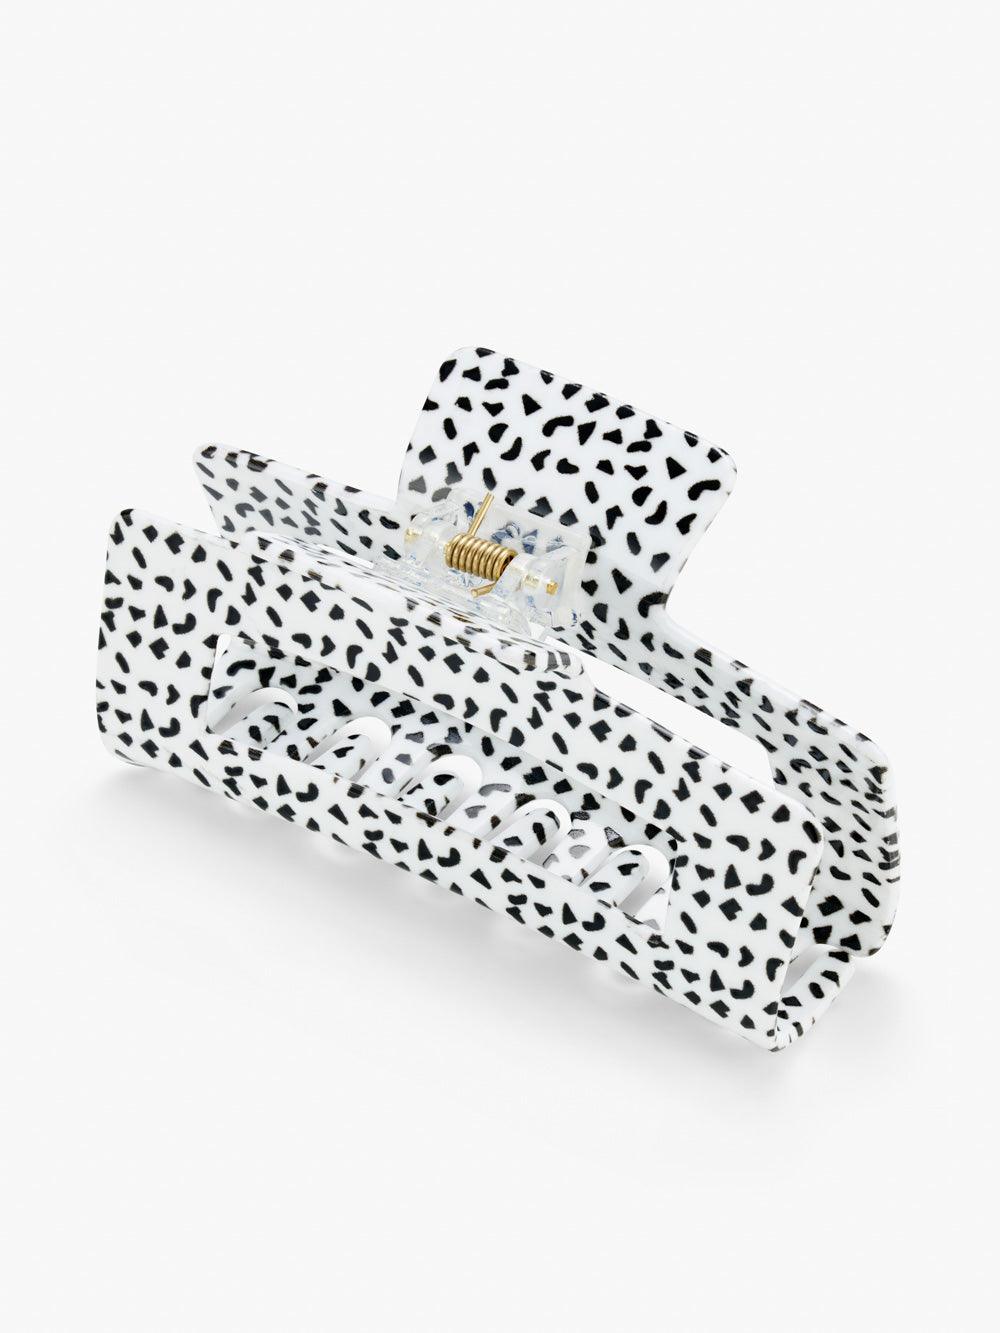 Small Stuff Accessories - Printed large square bulldog clip in white